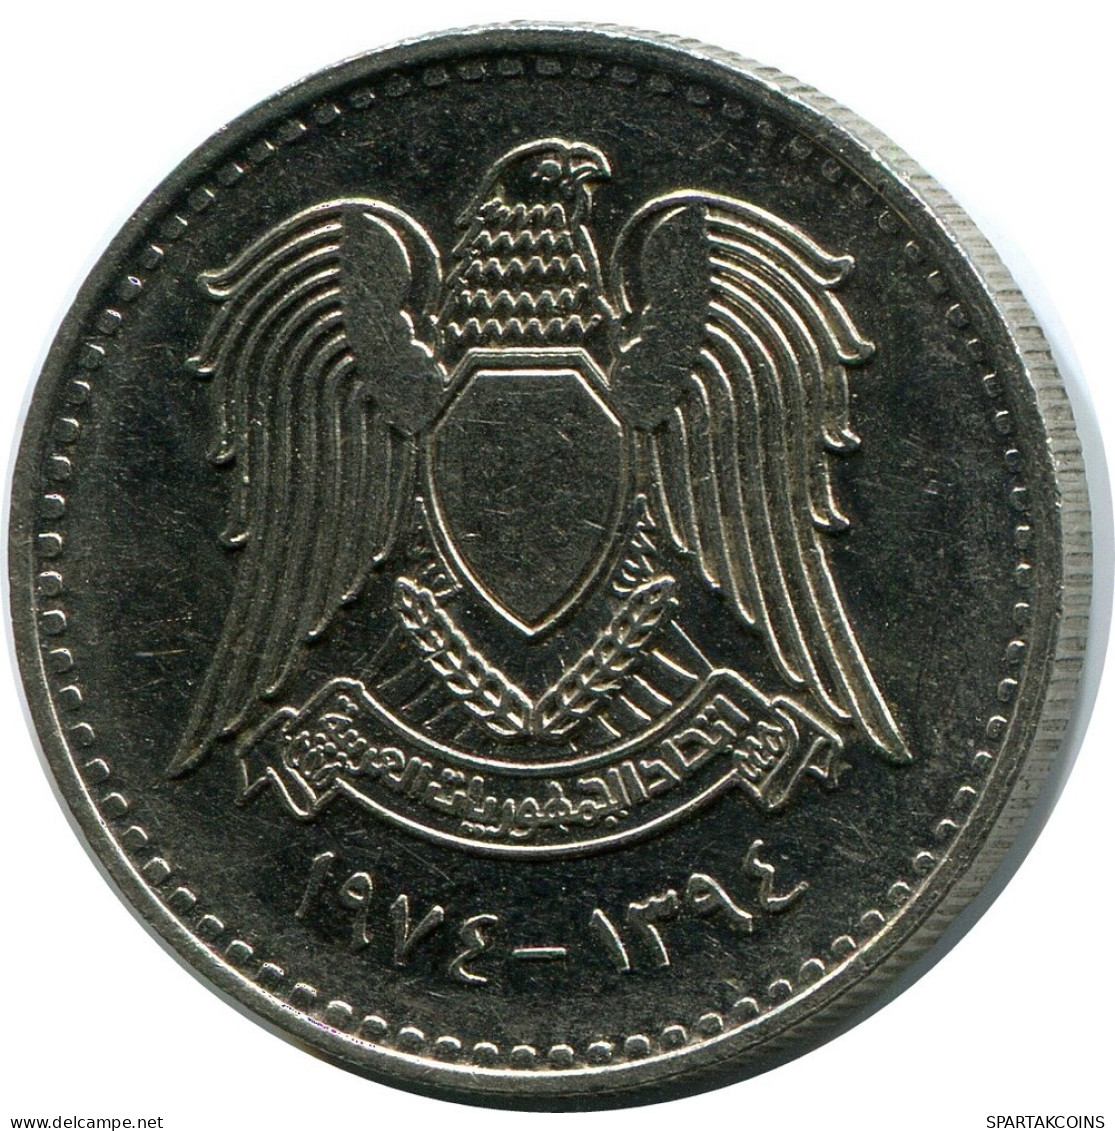 50 QIRSH 1974 SYRIA Islamic Coin #AR029.U.A - Syria